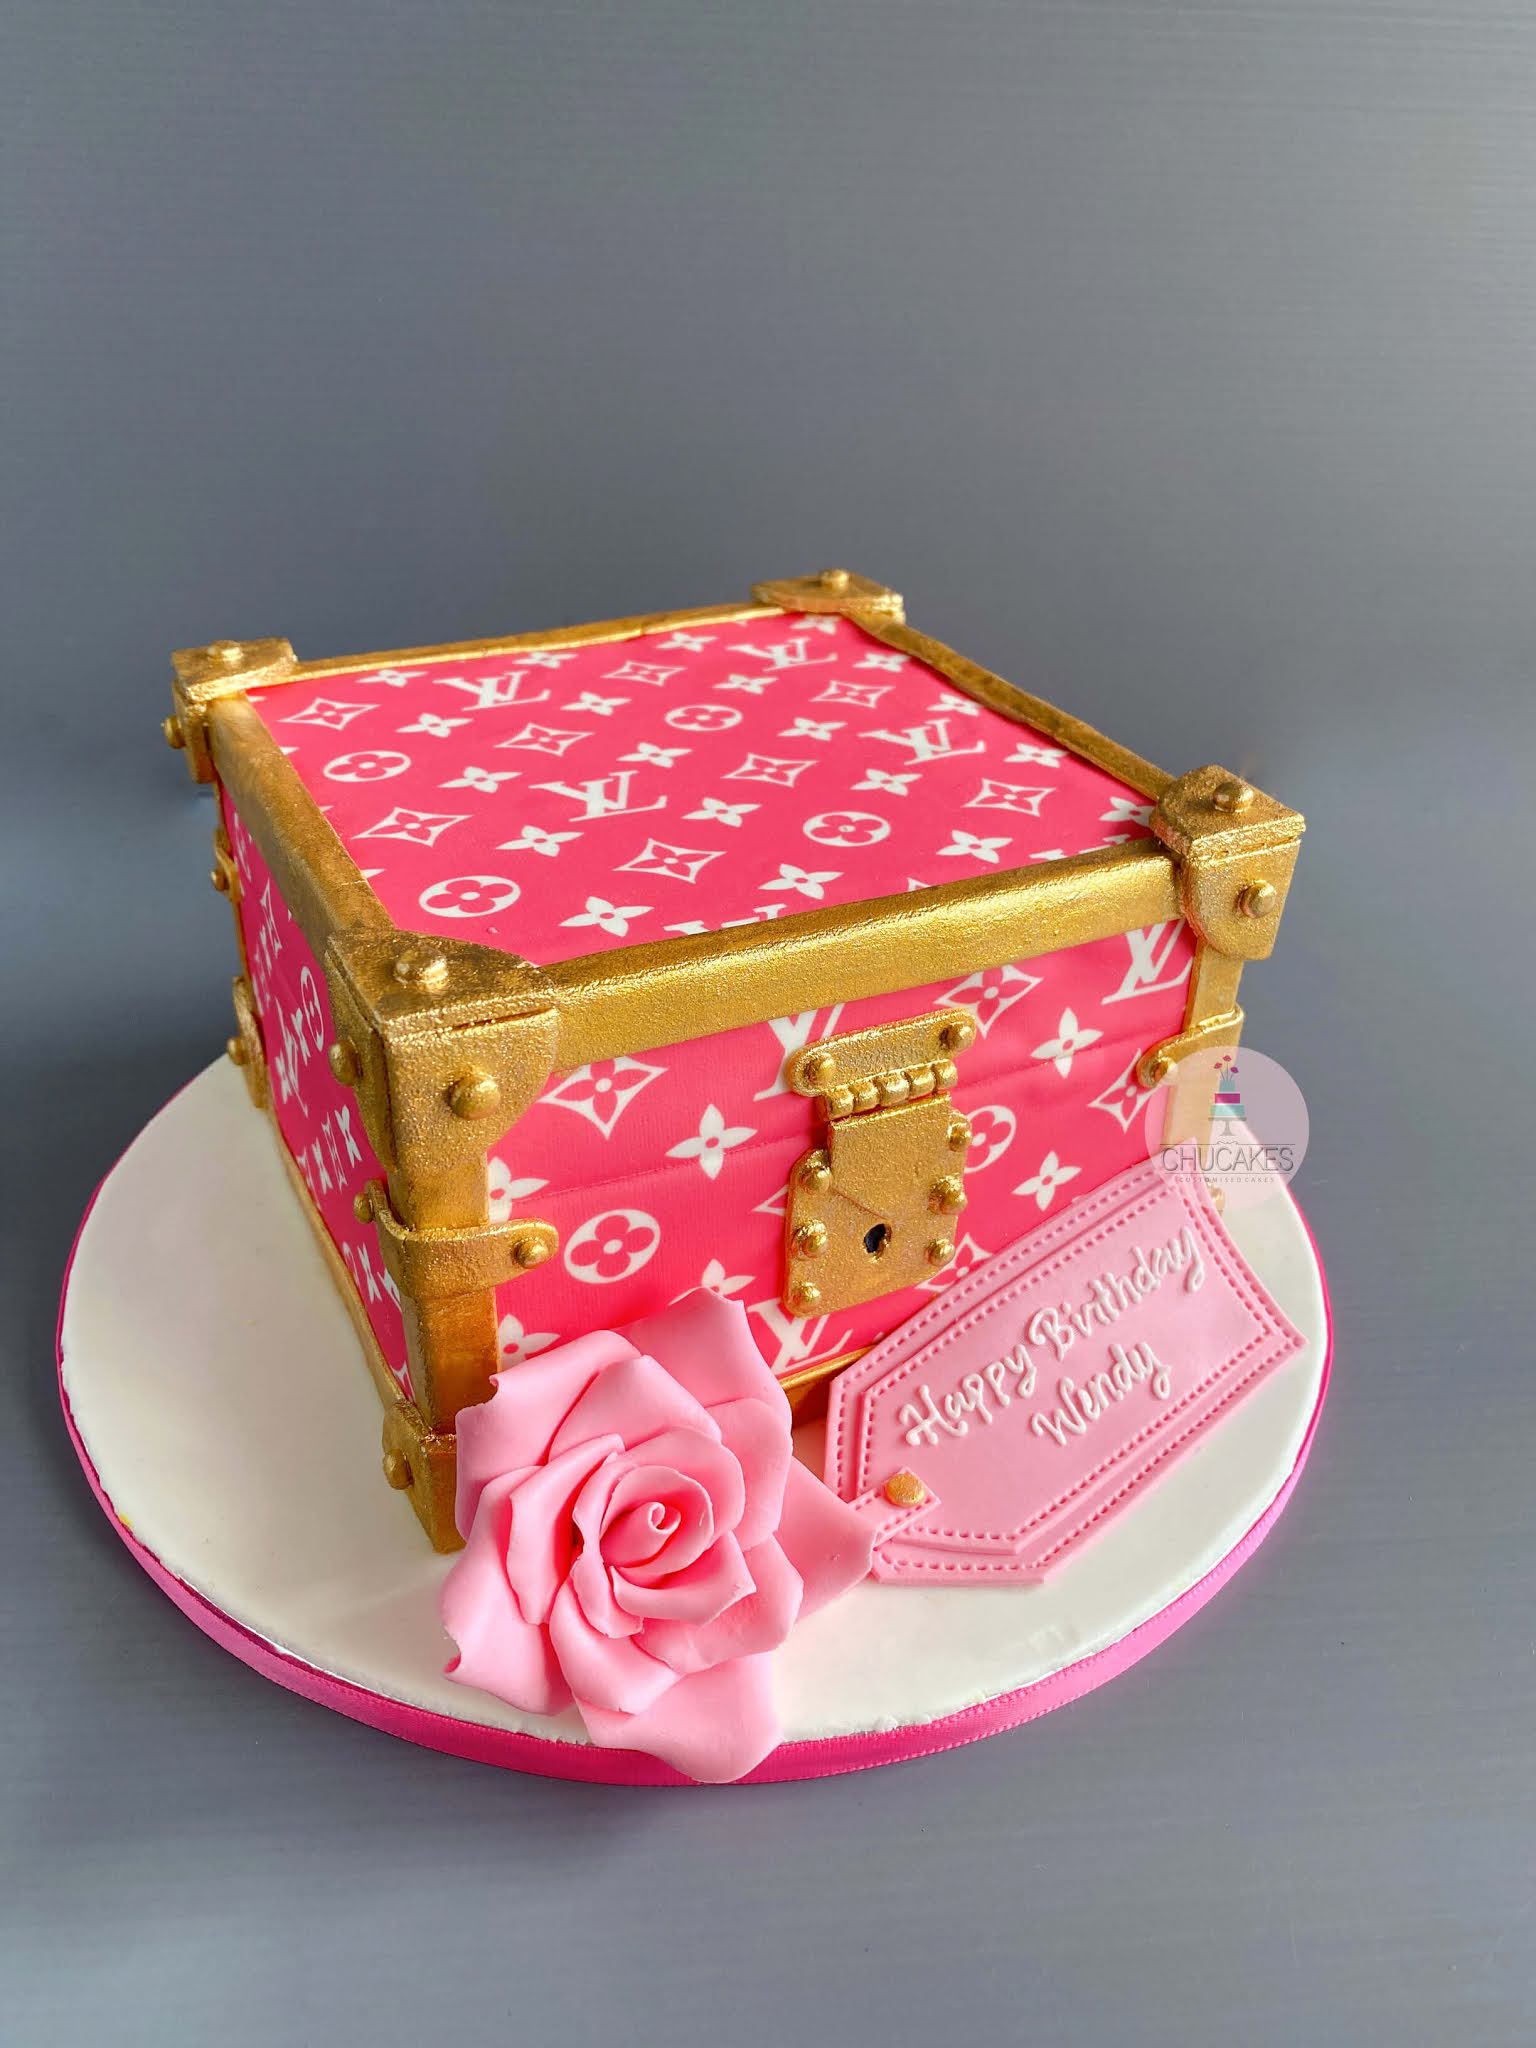 Louis Vuitton pink cake @sugarcreativebakery in 2023